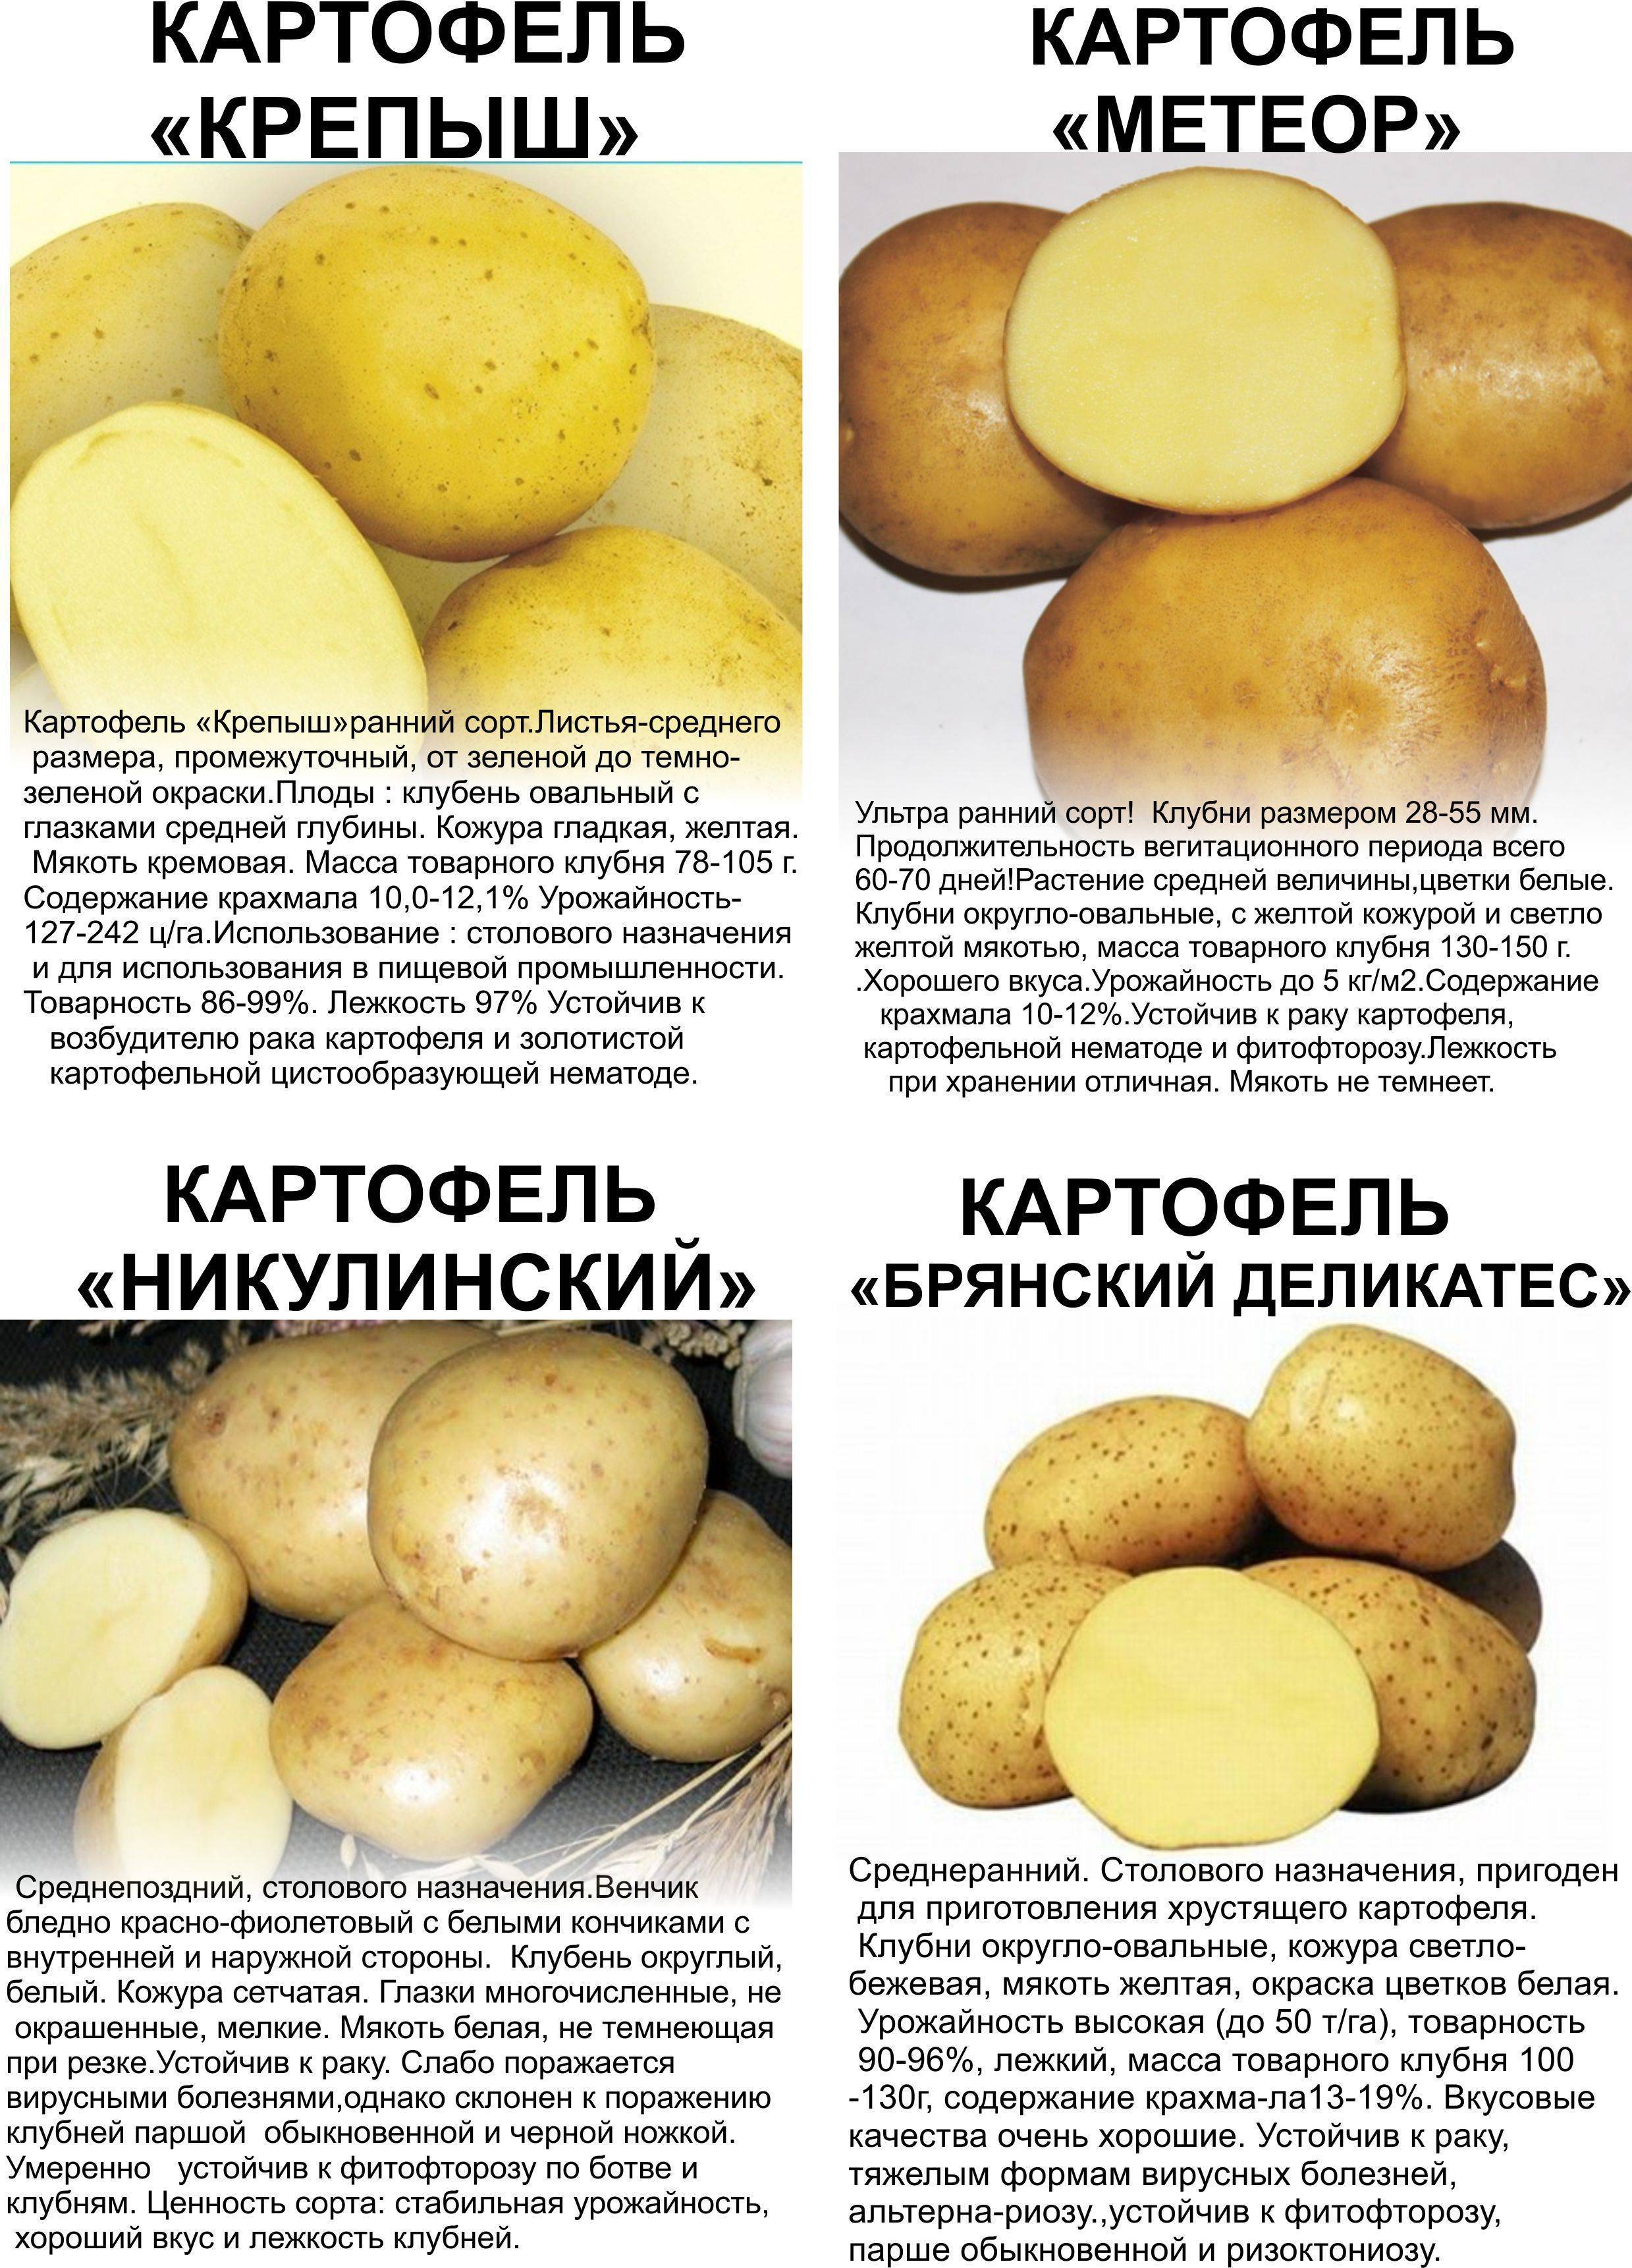 Картофель метеор: описание и характеристики сорта, фото, посадка, выращивание и уход